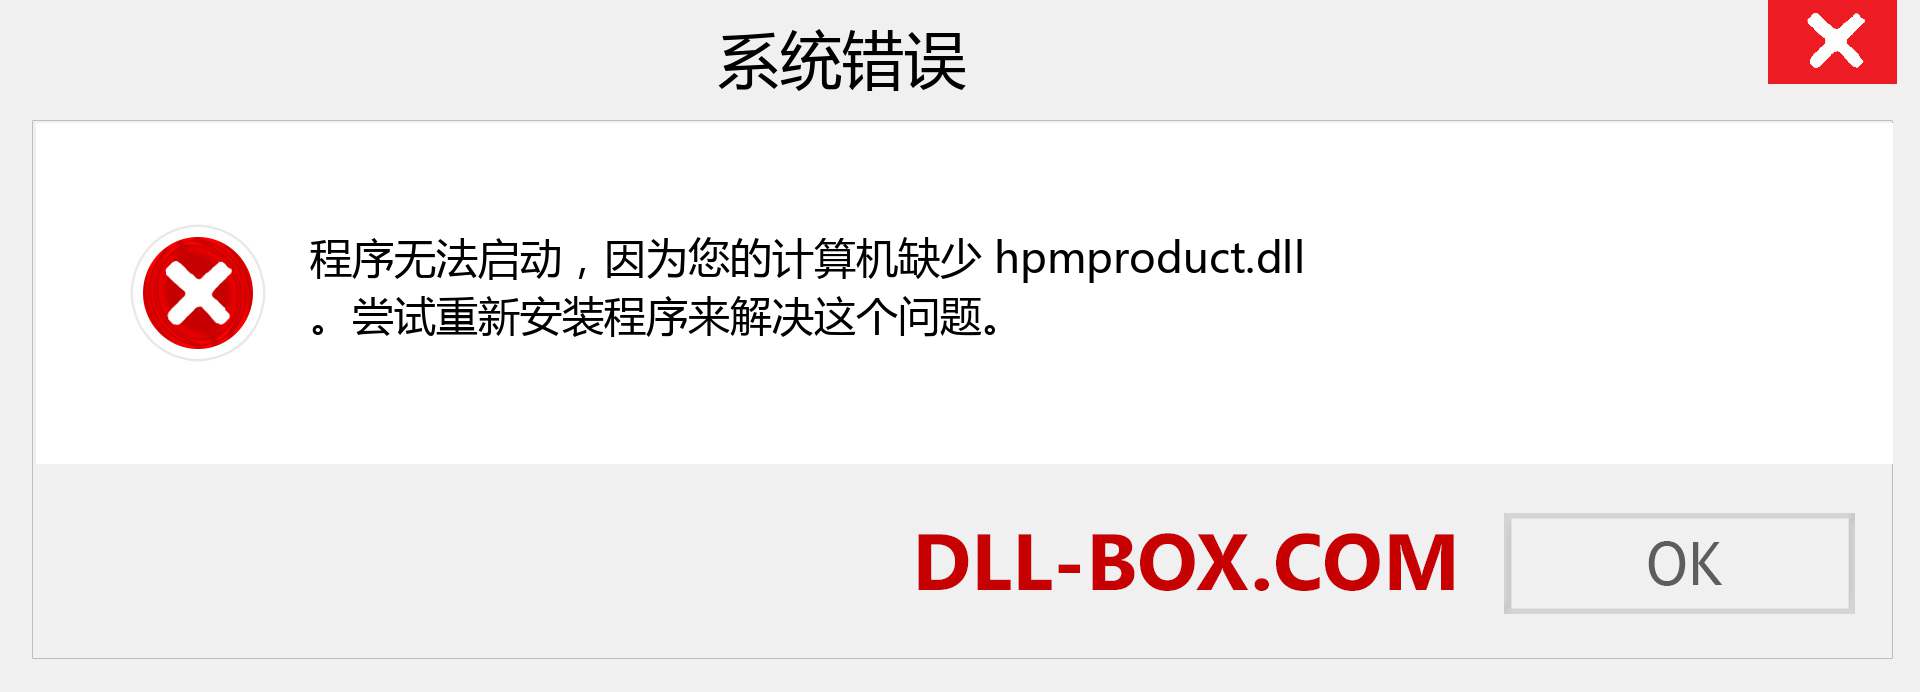 hpmproduct.dll 文件丢失？。 适用于 Windows 7、8、10 的下载 - 修复 Windows、照片、图像上的 hpmproduct dll 丢失错误